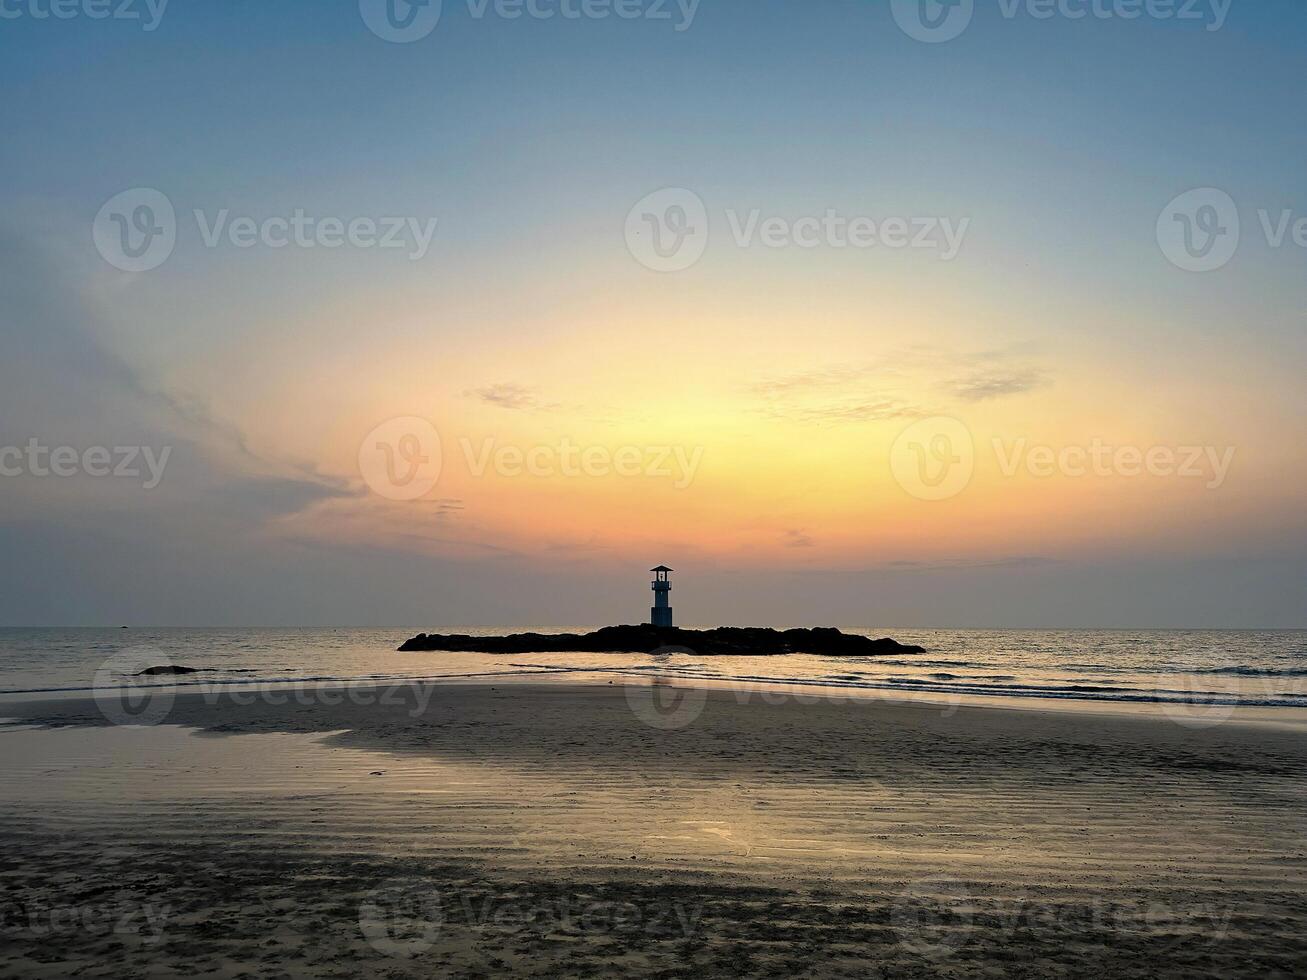 een rustig zeegezicht met een vuurtoren silhouet tegen een levendig zonsondergang, perfect voor thema's van reizen en natuur foto